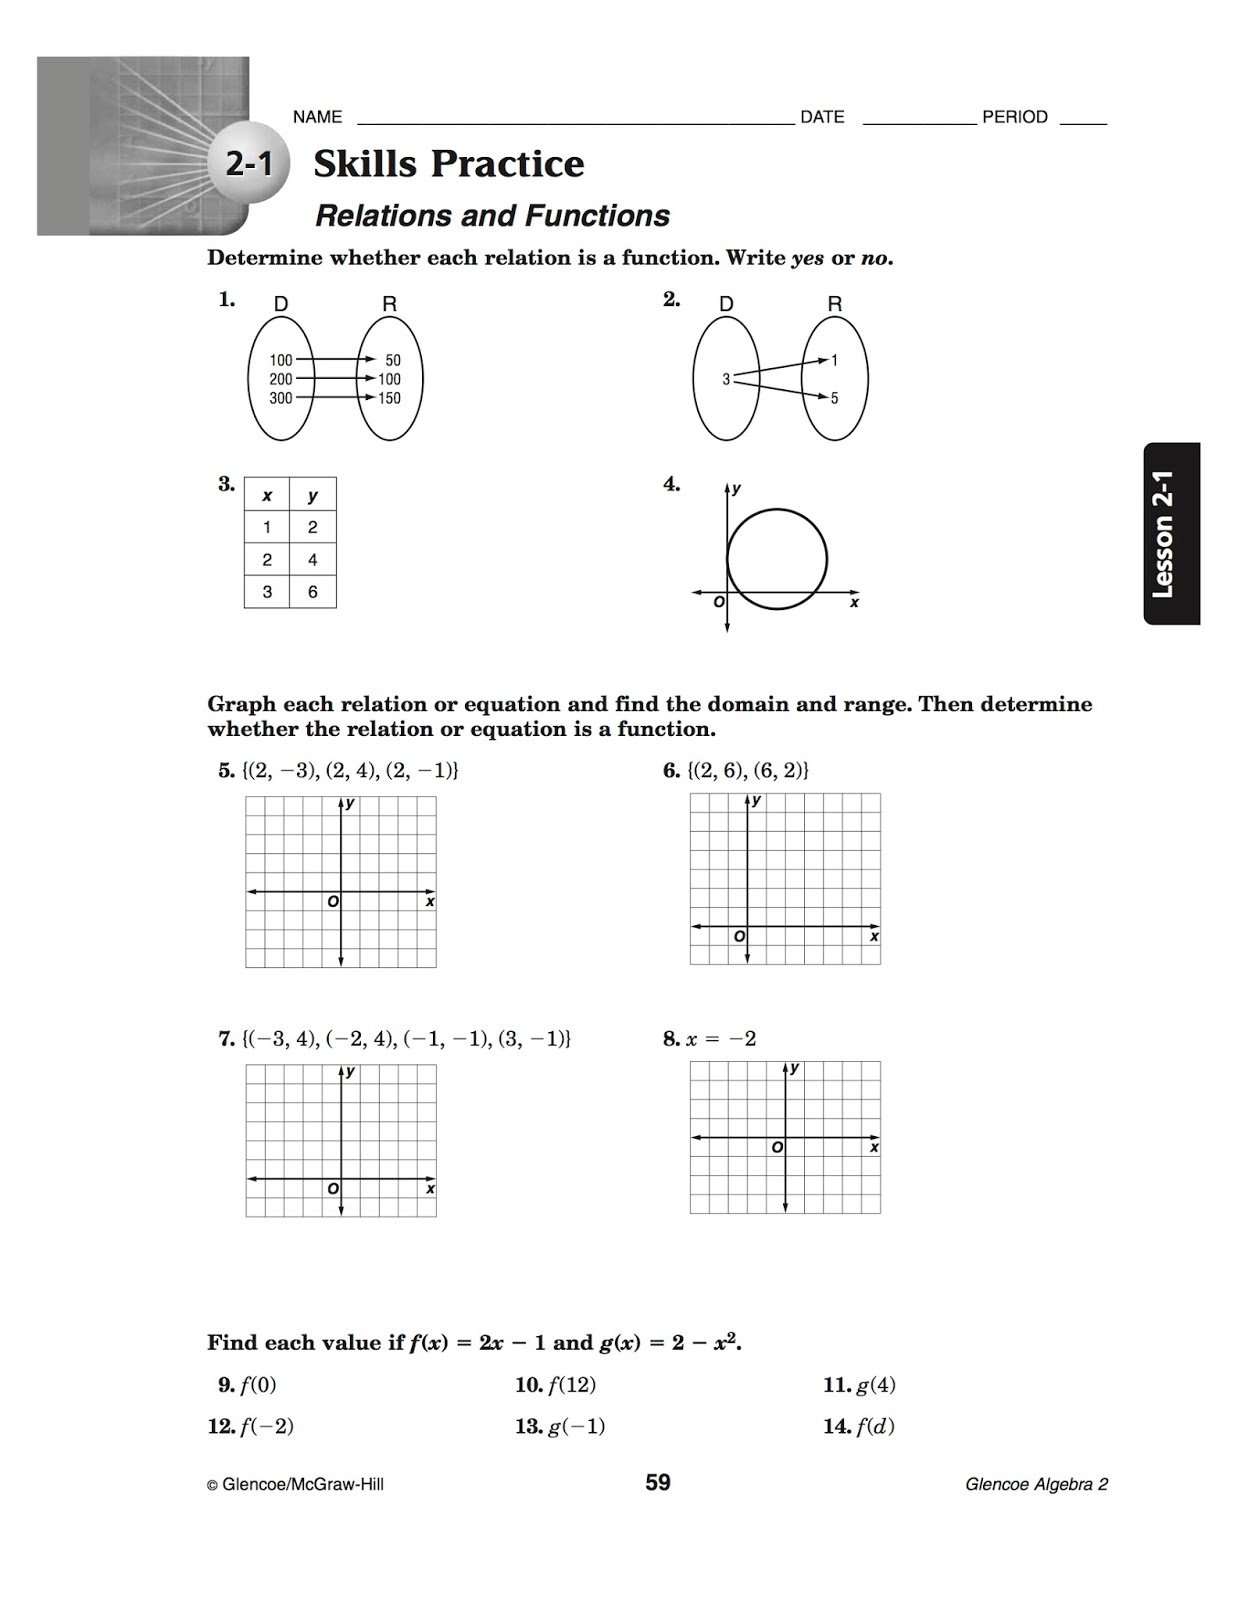 Relations And Functions Algebra 2 Worksheet Tutordale